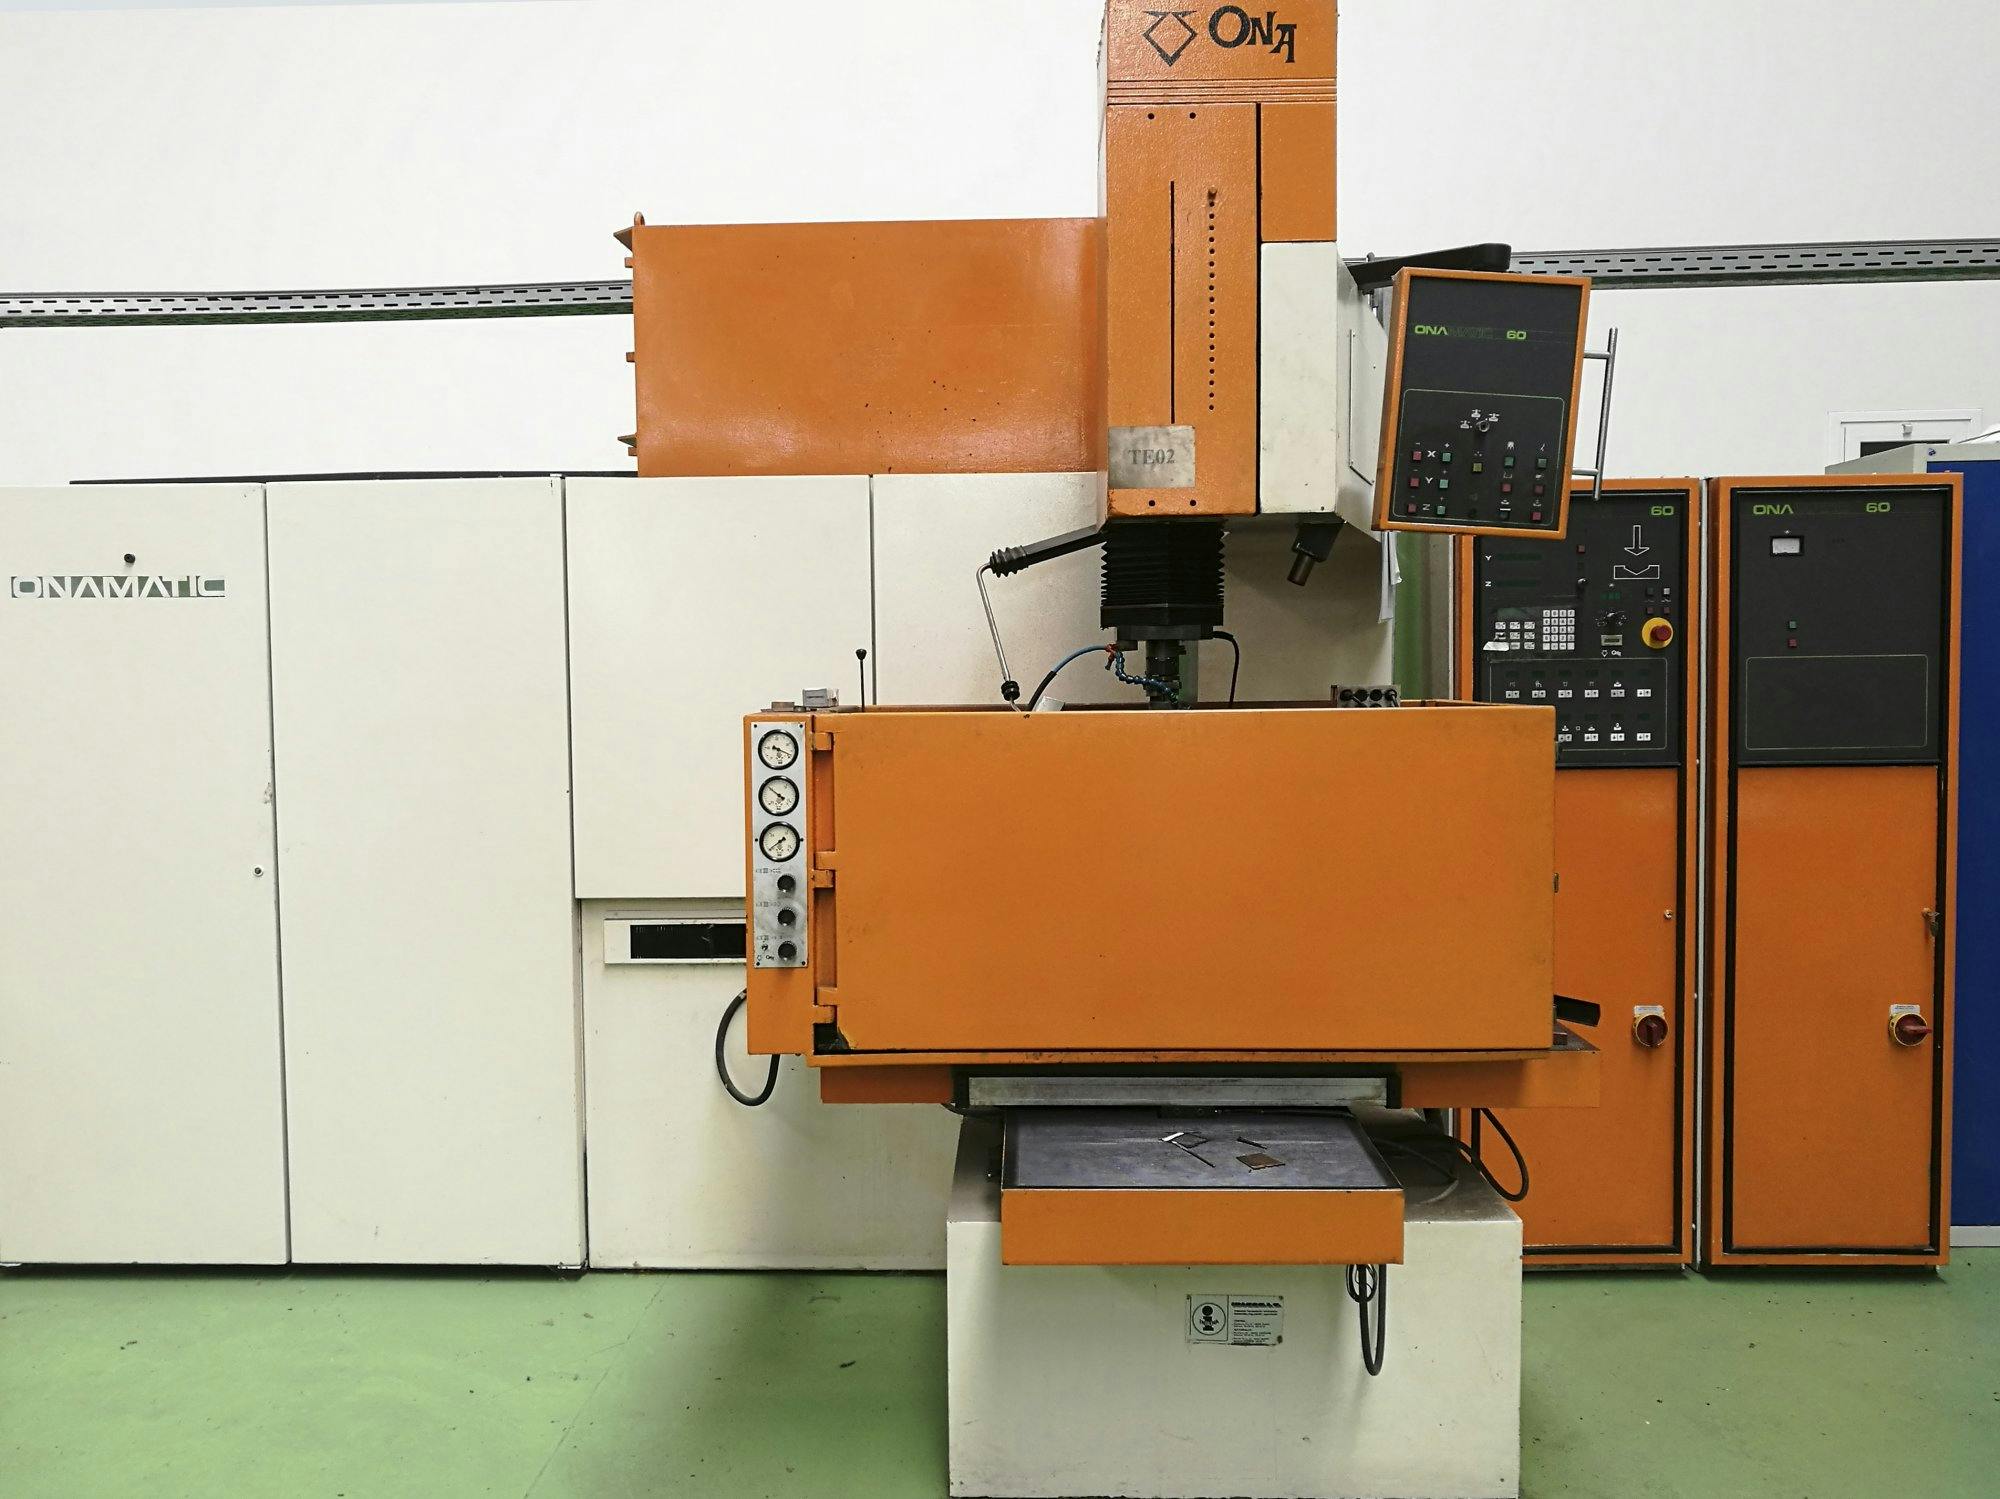 Vista frontal de la máquina ONA ONAMATIC 520